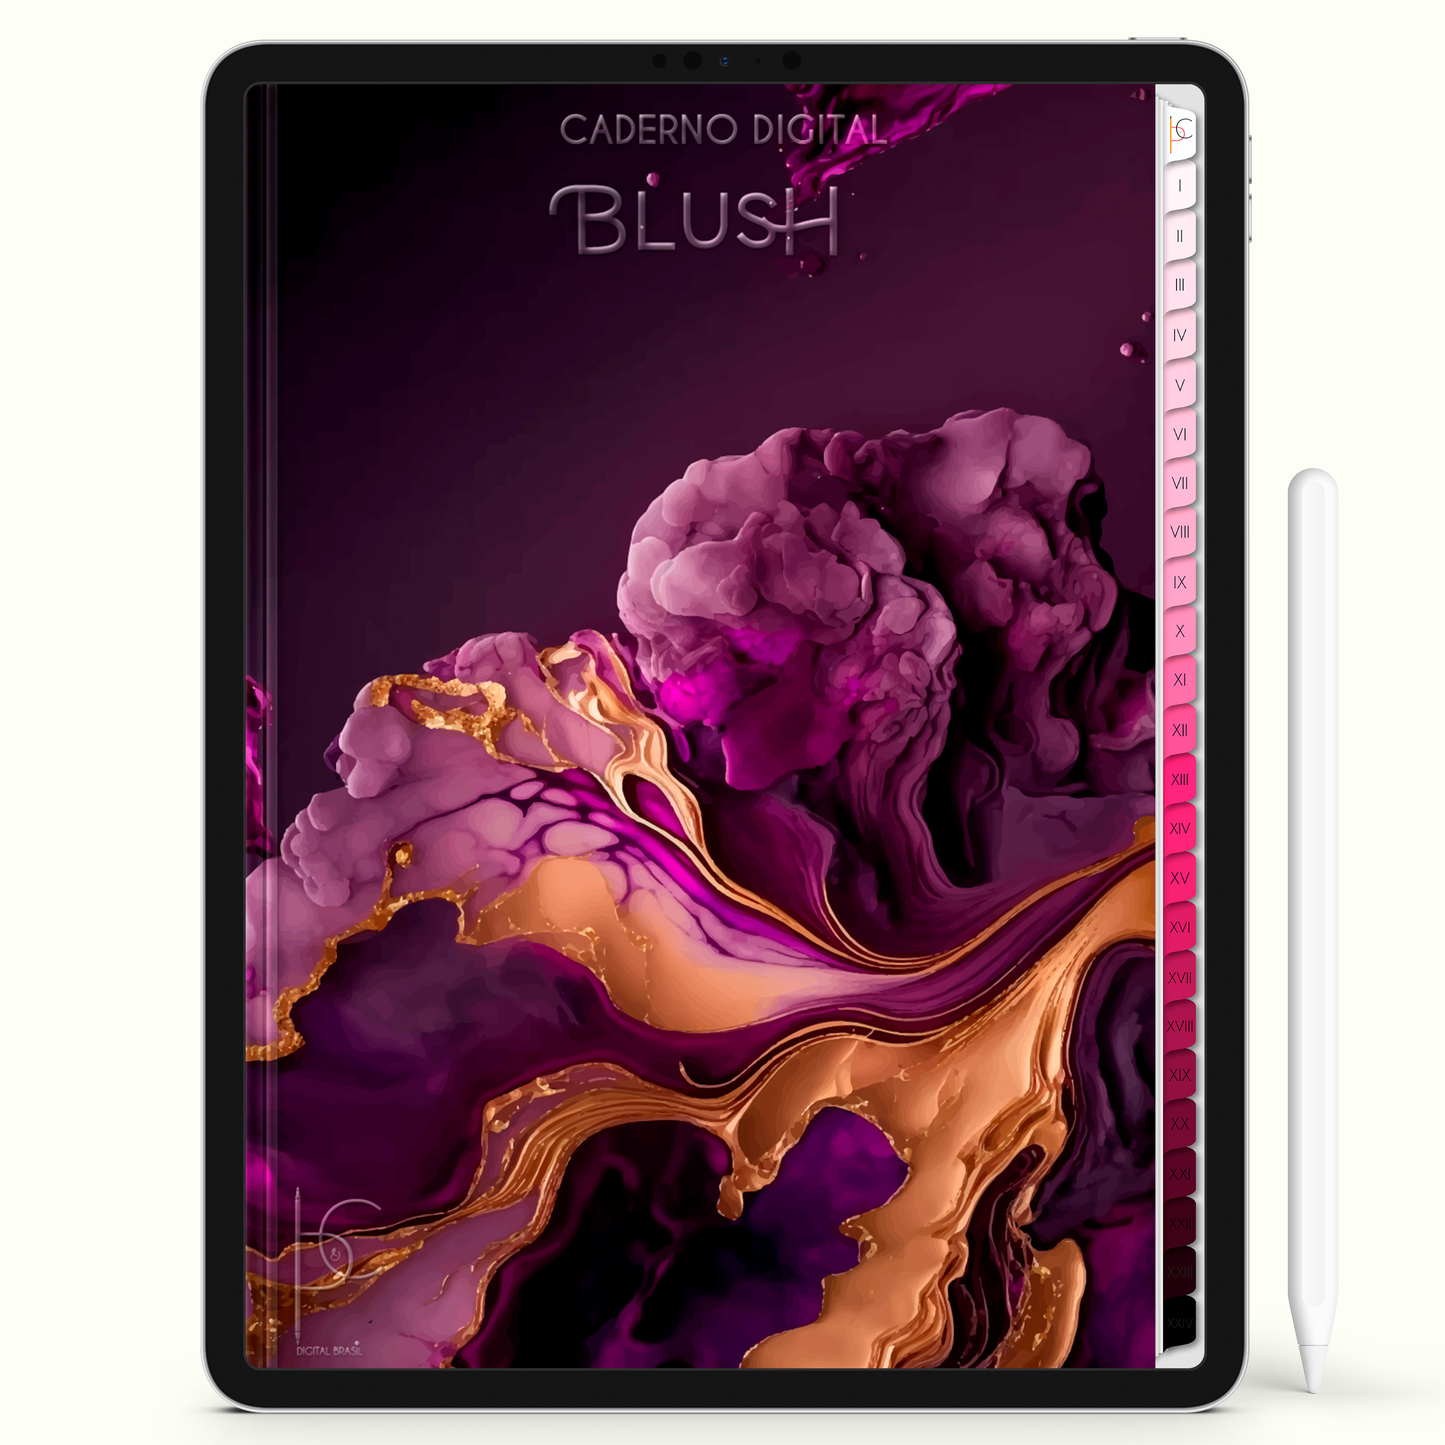 Caderno Digital Blush Notes Gold Anotações 24 Matérias • iPad e Tablet Android • Download instantâneo • Sustentável